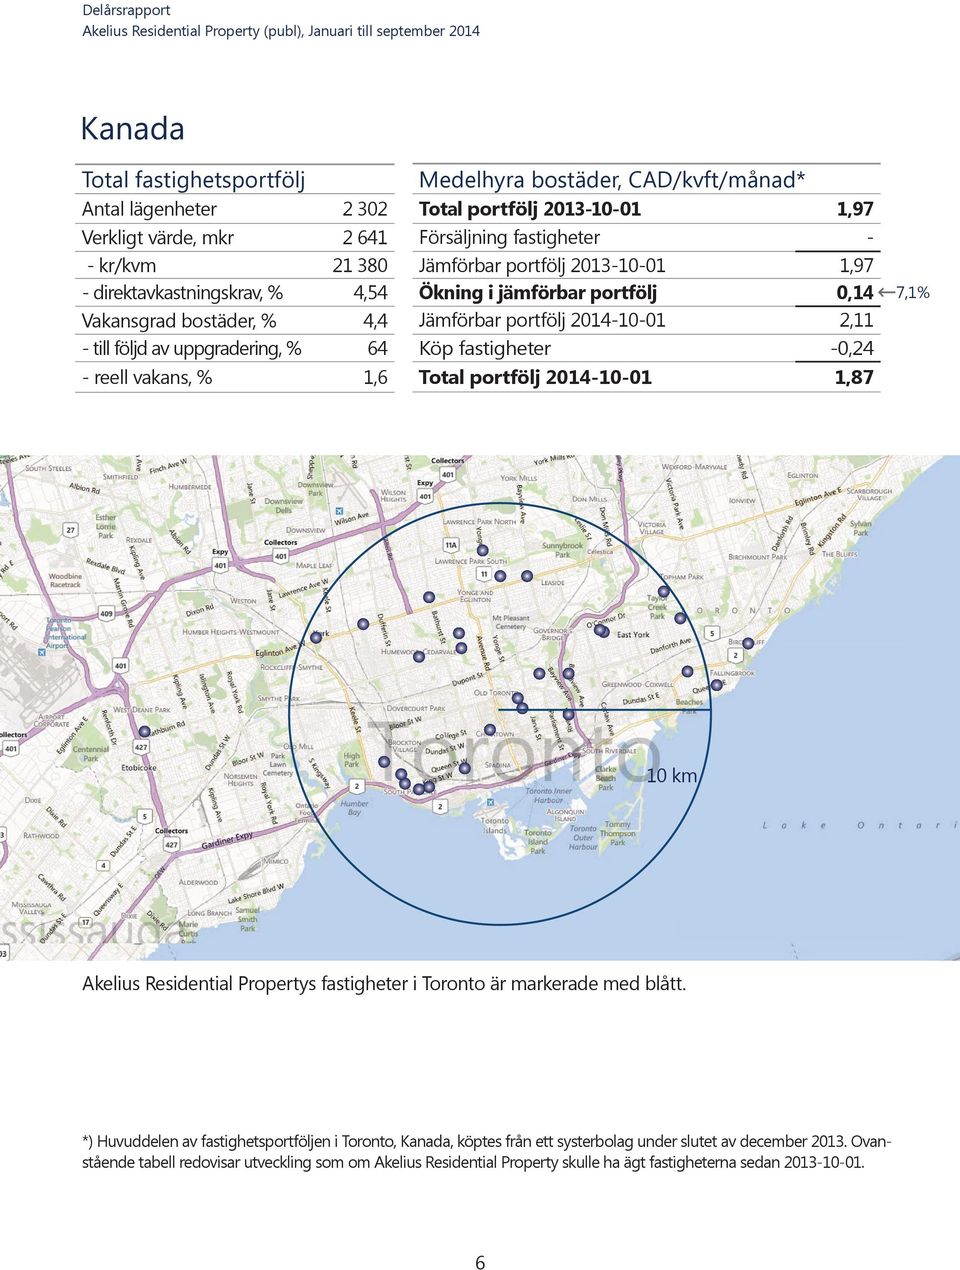 2014-10-01 Köp fastigheter Total portfölj 2014-10-01 1,97 1,97 0,14 2,11-0,24 1,87 10 km Akelius Residential Propertys fastigheter i Toronto är markerade med blått.